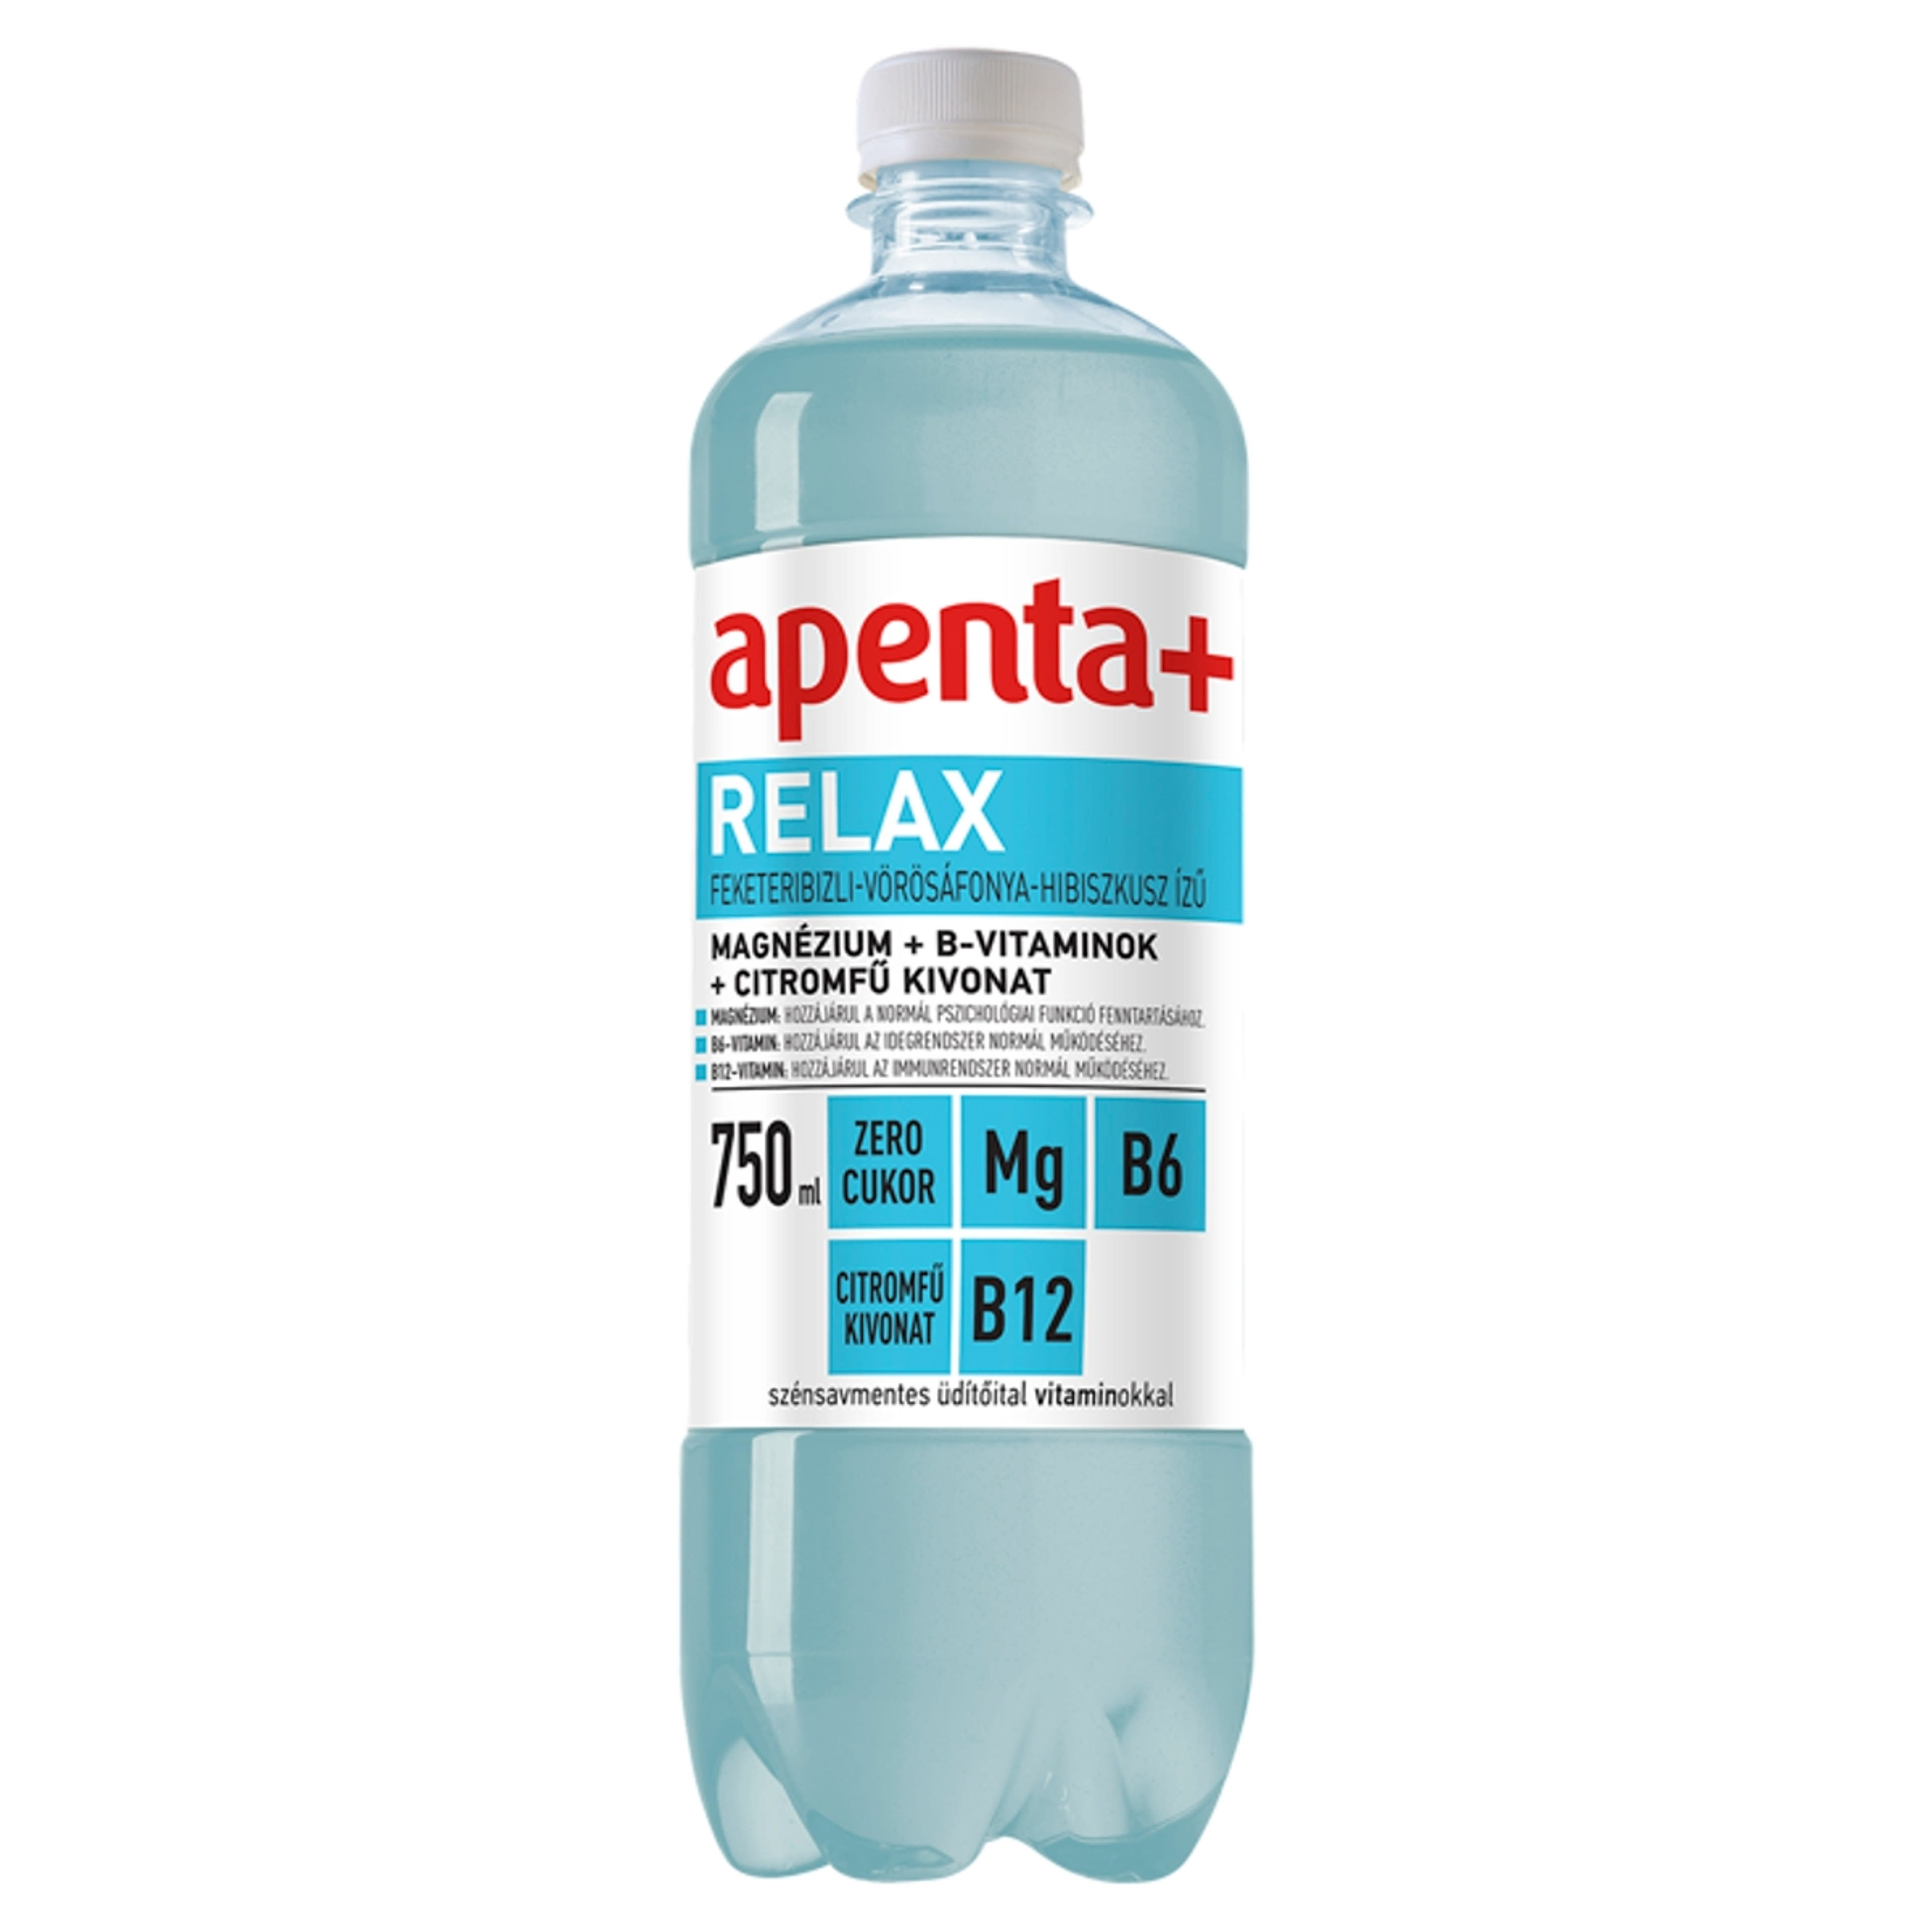 Apenta+ Relax szénsavmentes üdítőital vitaminokkal feketeribizli-vörösáfonya-hibiszkusz ízű - 750 ml